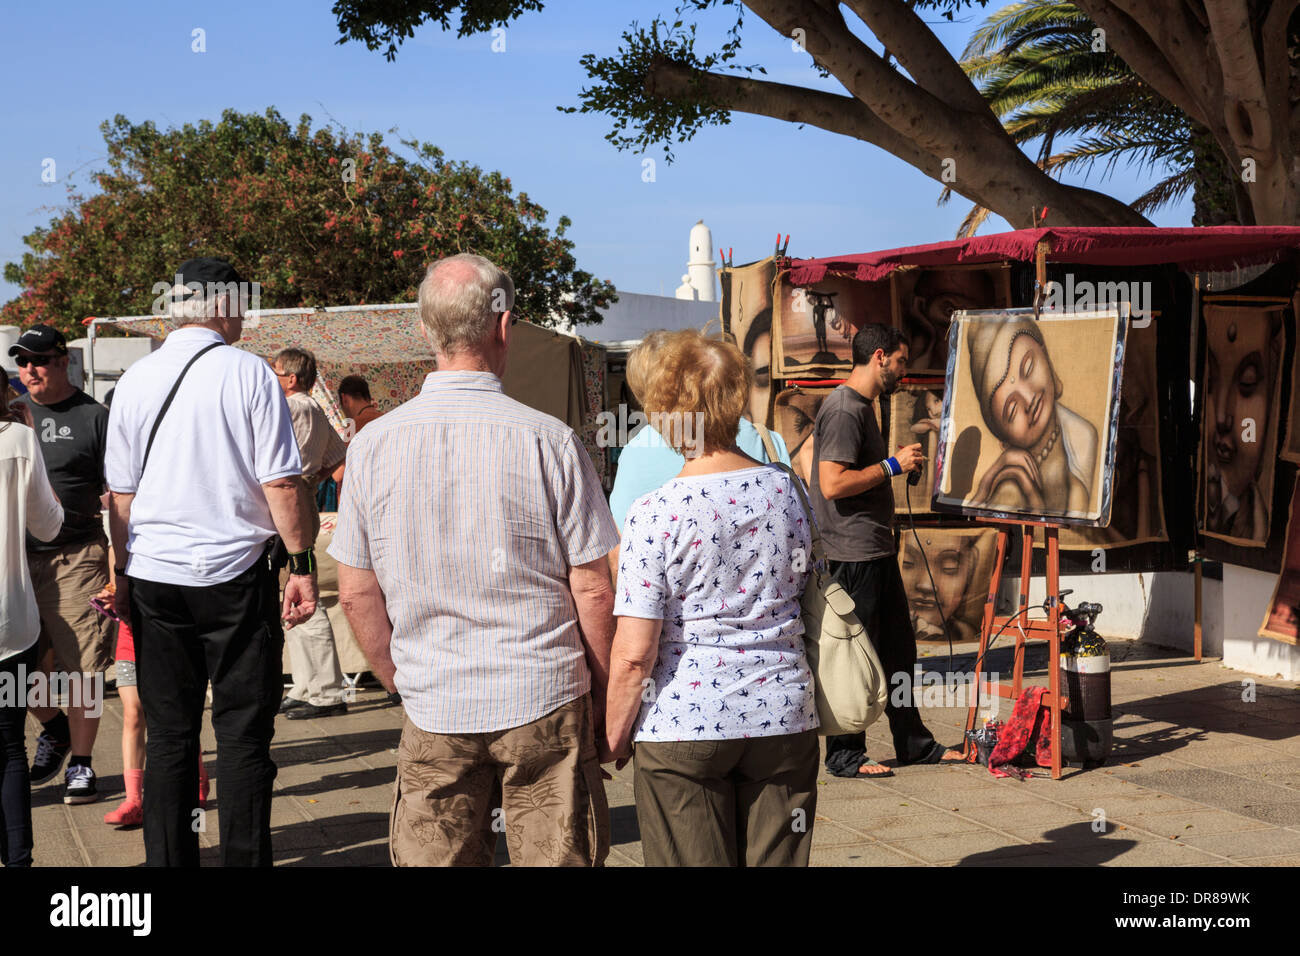 Les touristes à regarder un artiste au travail peinture photos dans l'état occupé dimanche street market dans Teguise, Lanzarote, îles Canaries, Espagne Banque D'Images